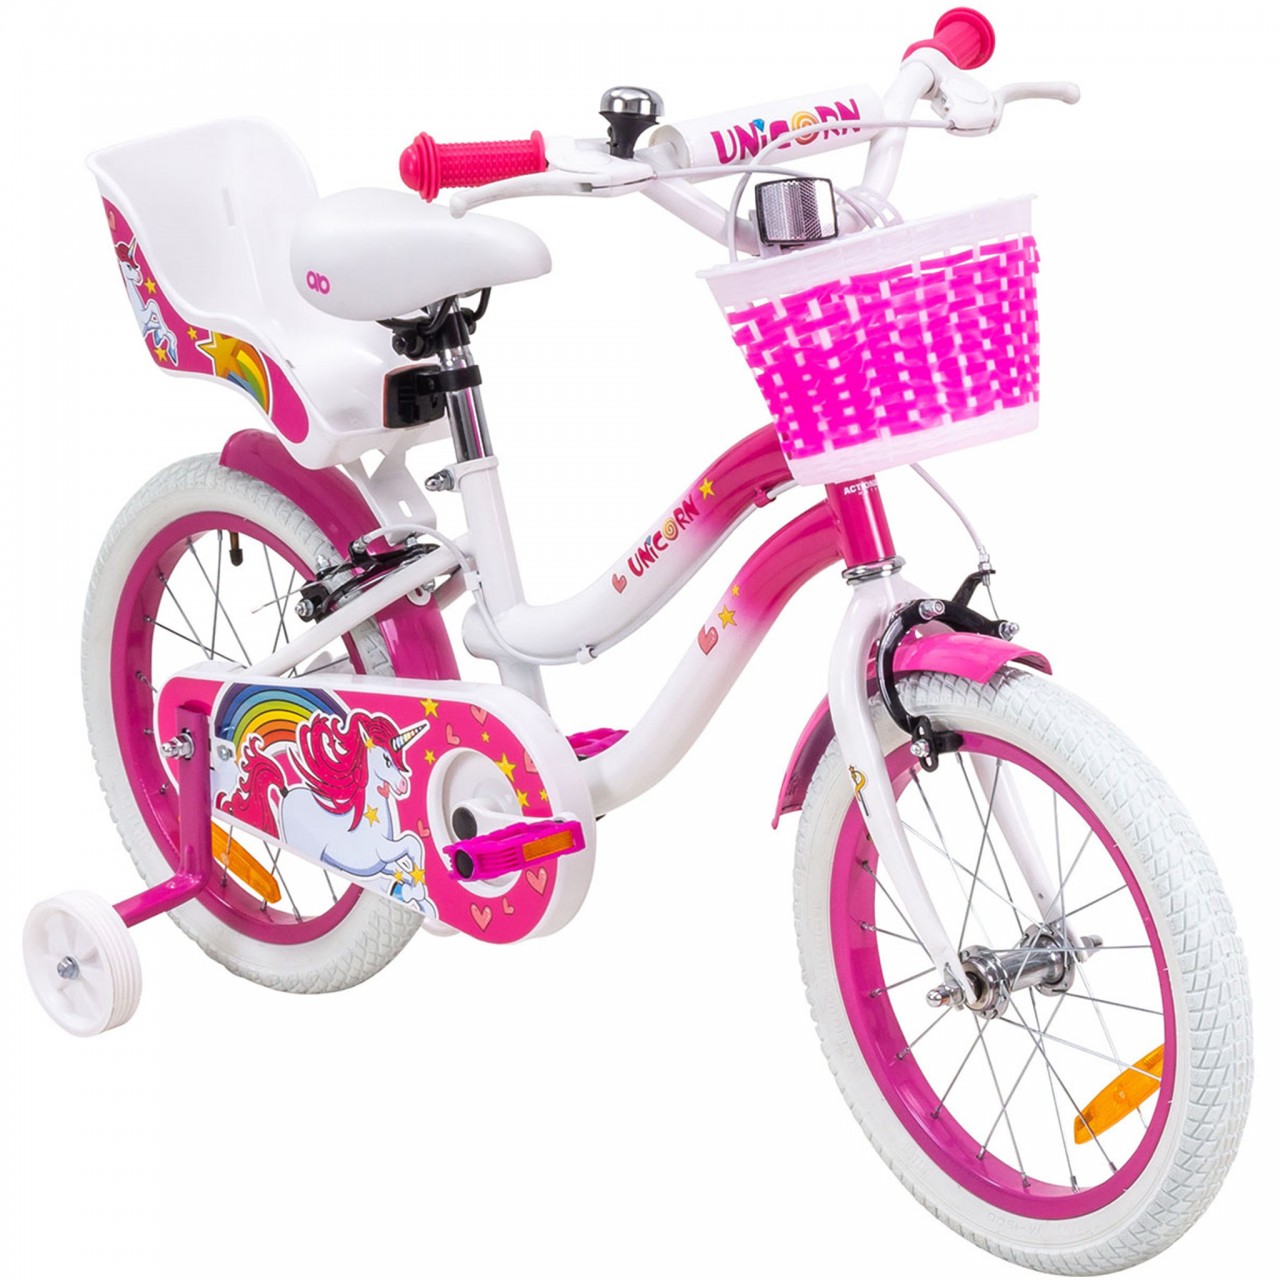 01-kinderfahrrad-16-zoll-pink-actionbikes-motors-unicorn-startbild